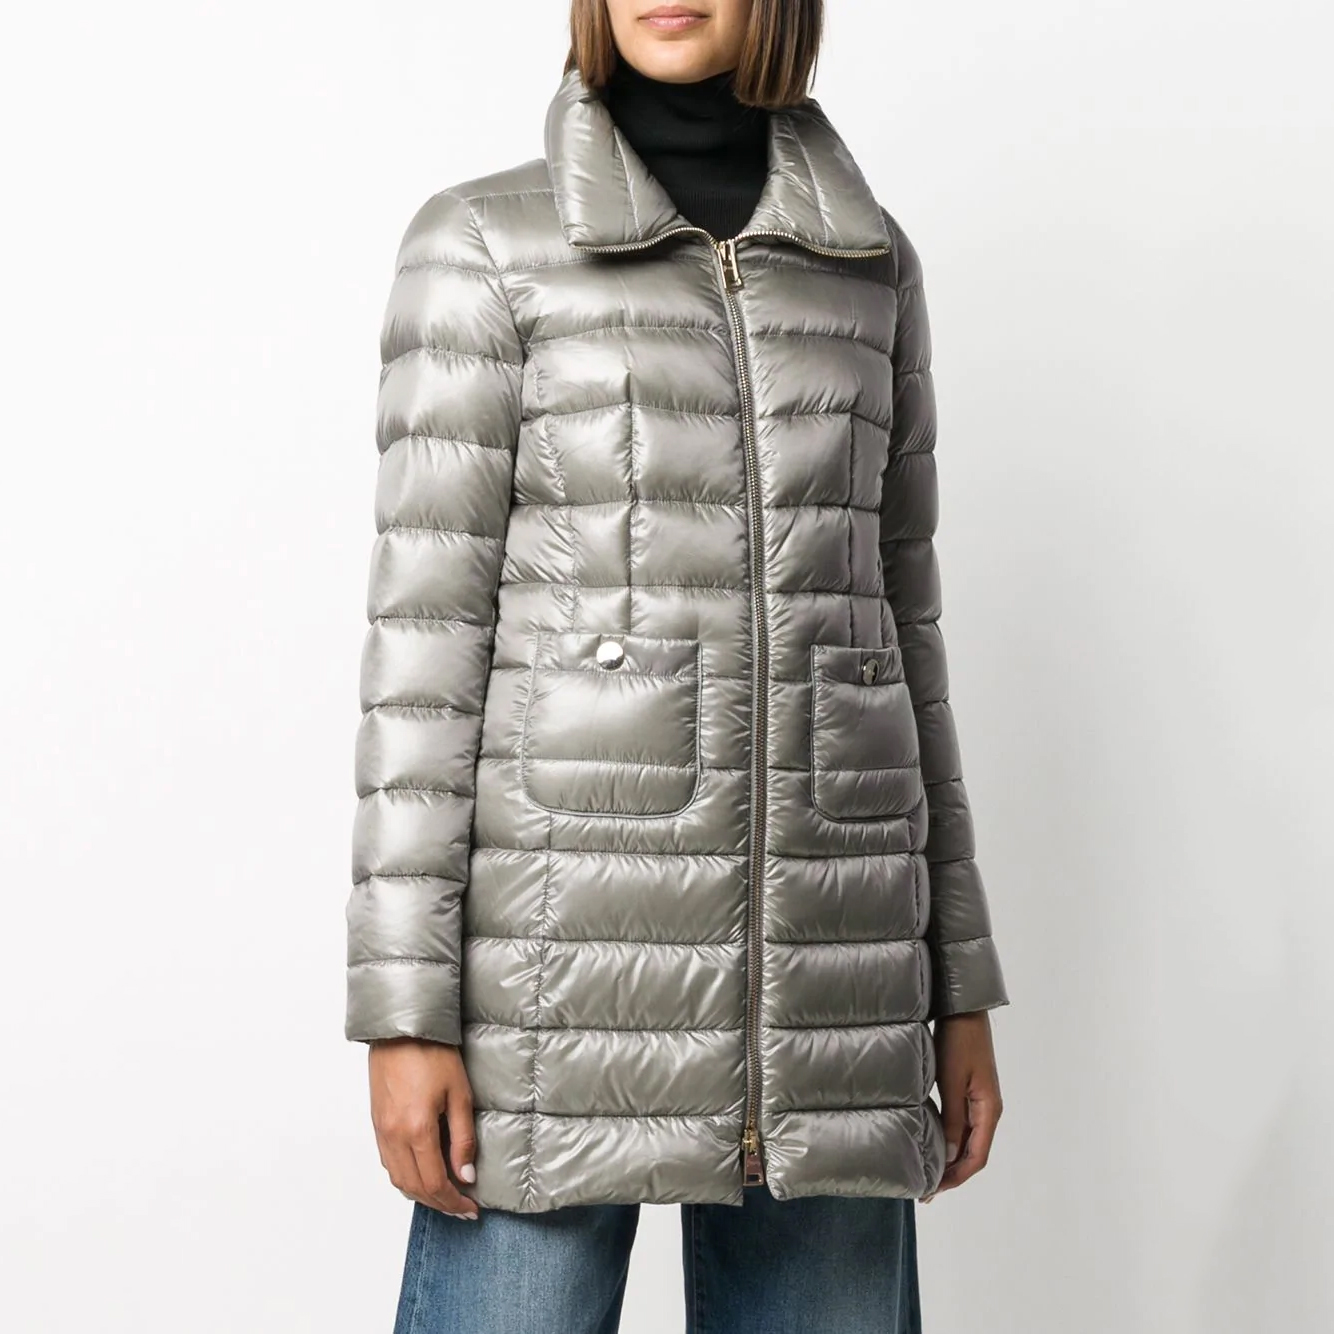 2020 Women Winter Down Jacket Cotton Padded Warm Puffer Coat Ladies Long Coat Outwear 